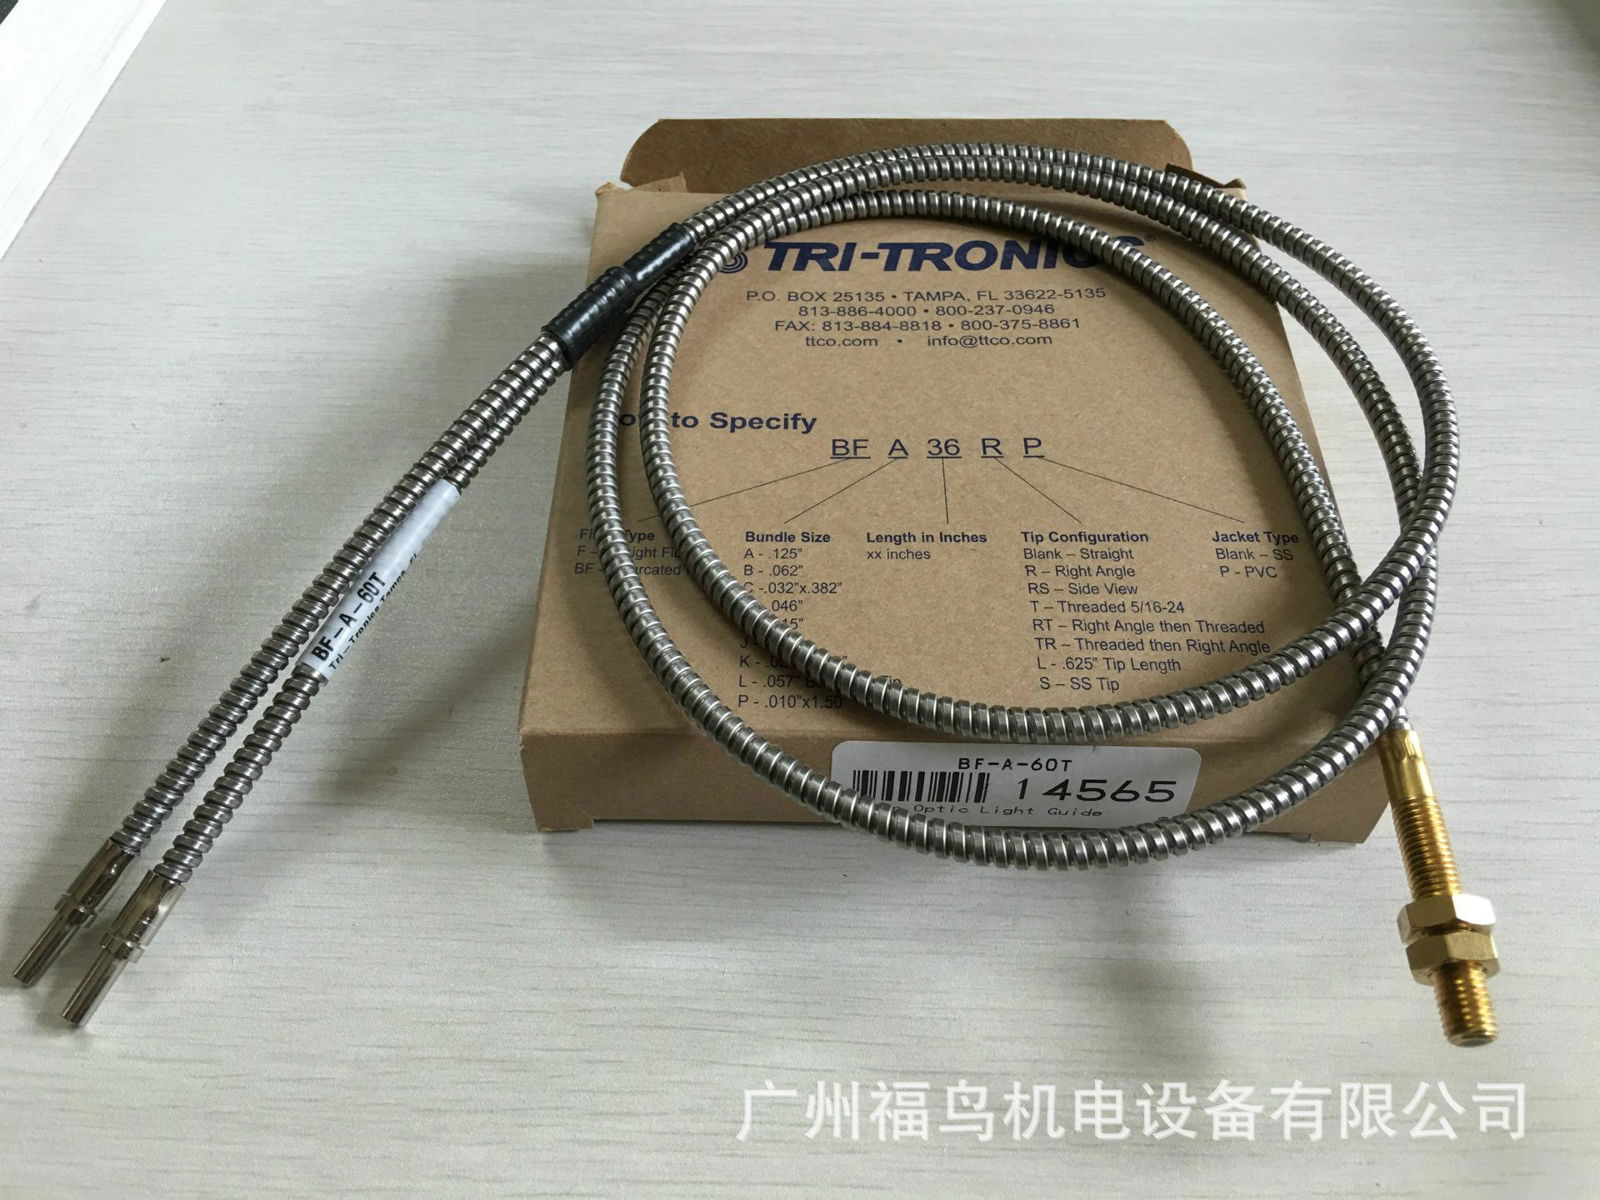 TRI-TRONICS光纤, 型号: BF-A-60T